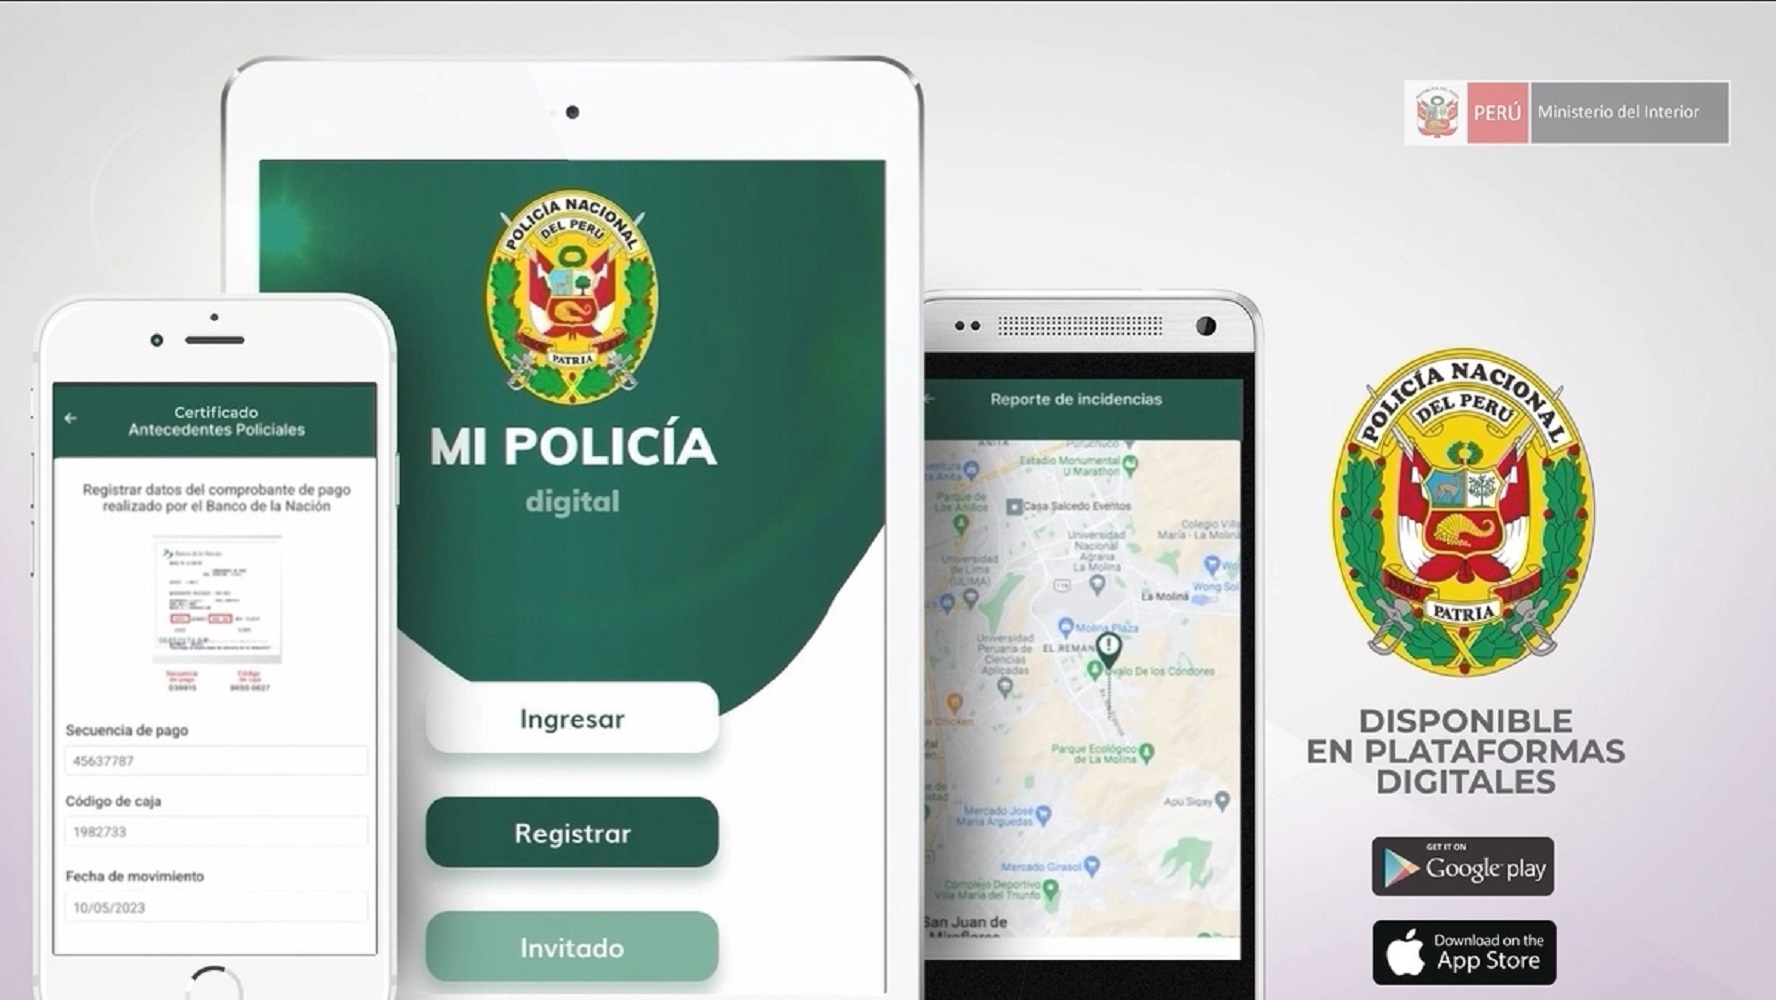 “Mi Policía Digital” El aplicativo móvil ciudadano, para reportar incidentes a la PNP en tiempo real.